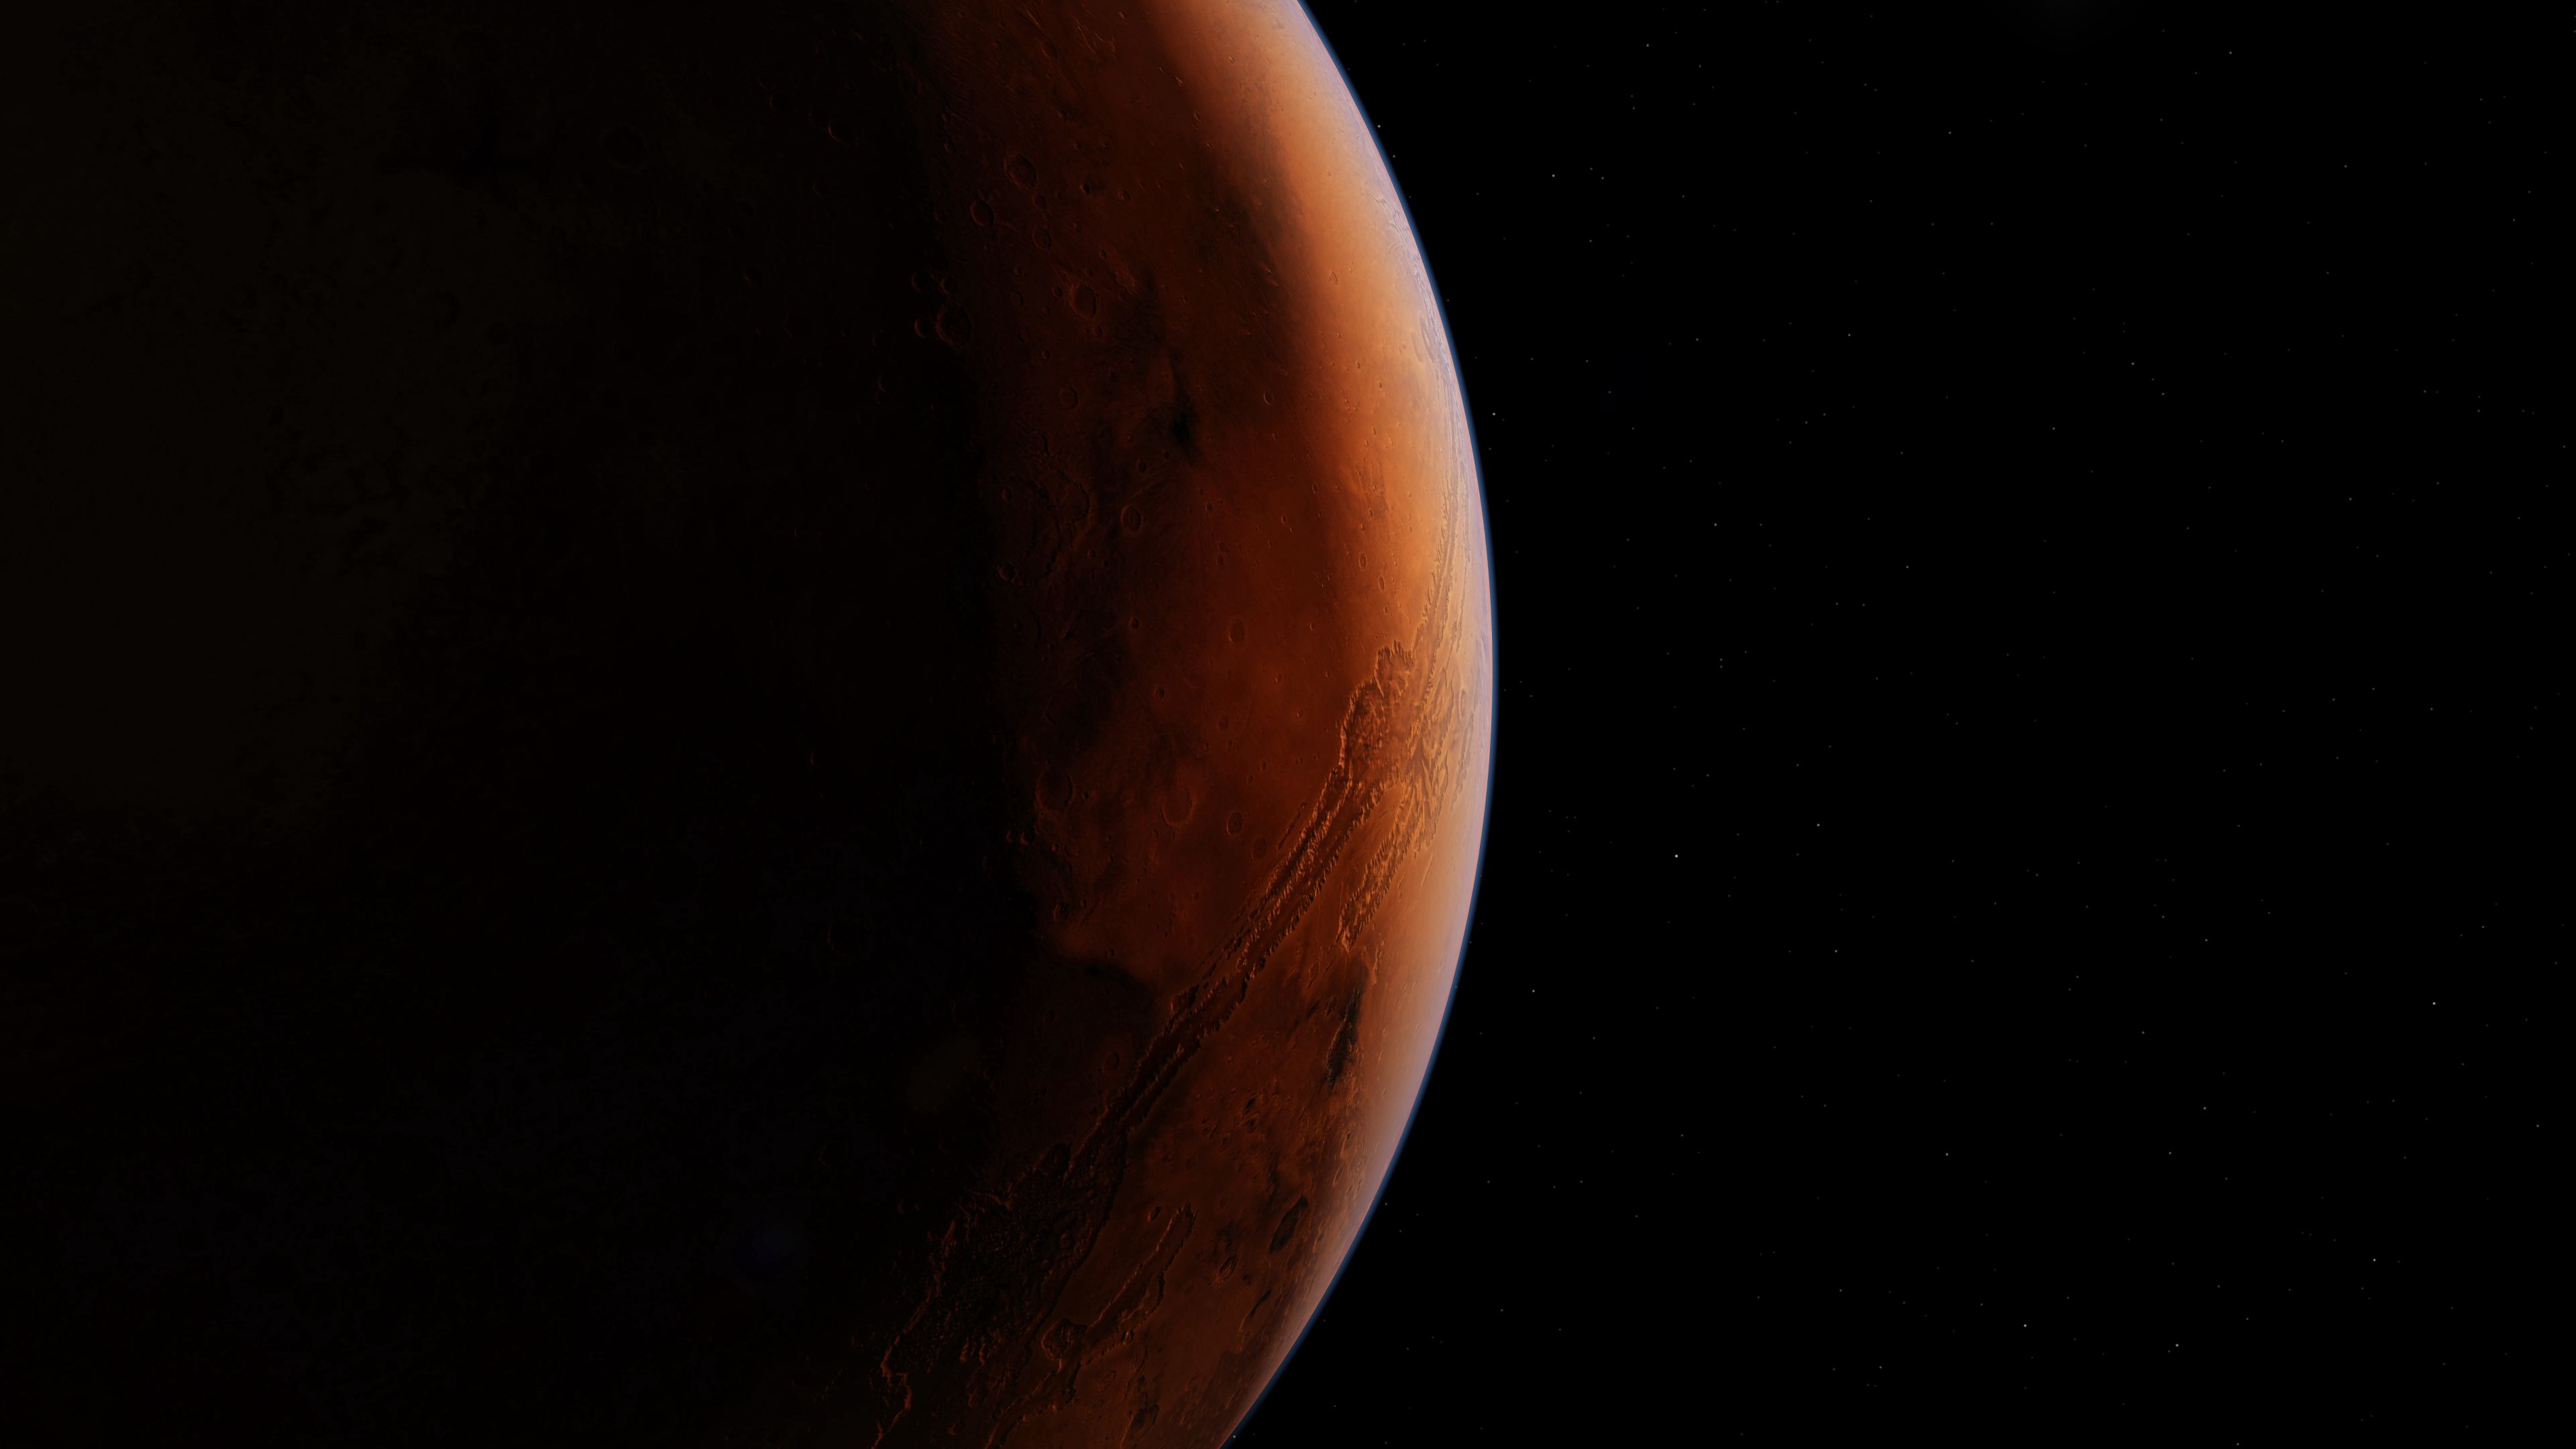 Скачать обои Марс на телефон бесплатно